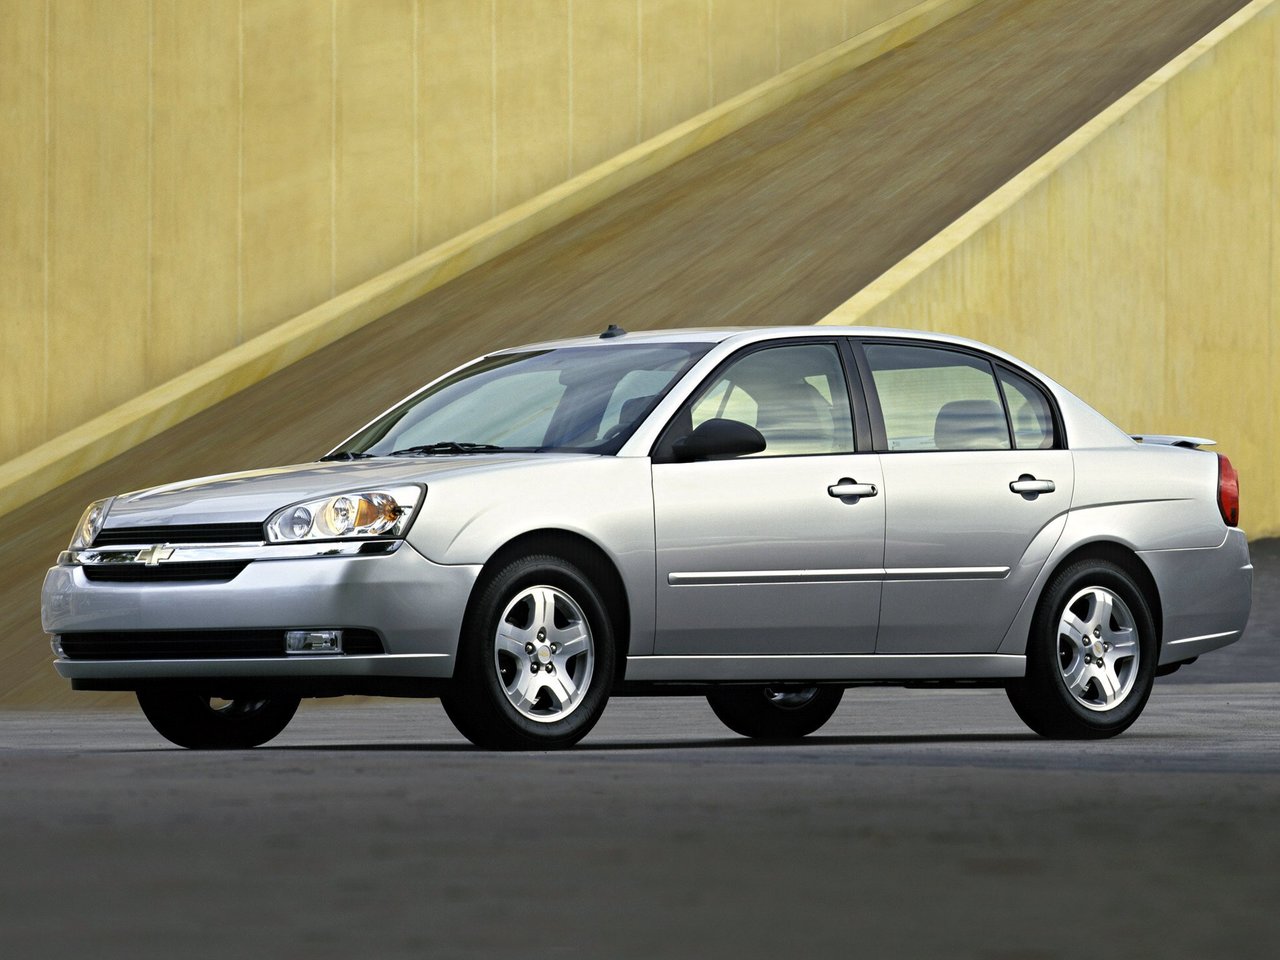 Расход газа трёх комплектаций седана Chevrolet Malibu. Разница стоимости заправки газом и бензином. Автономный пробег до и после установки ГБО.